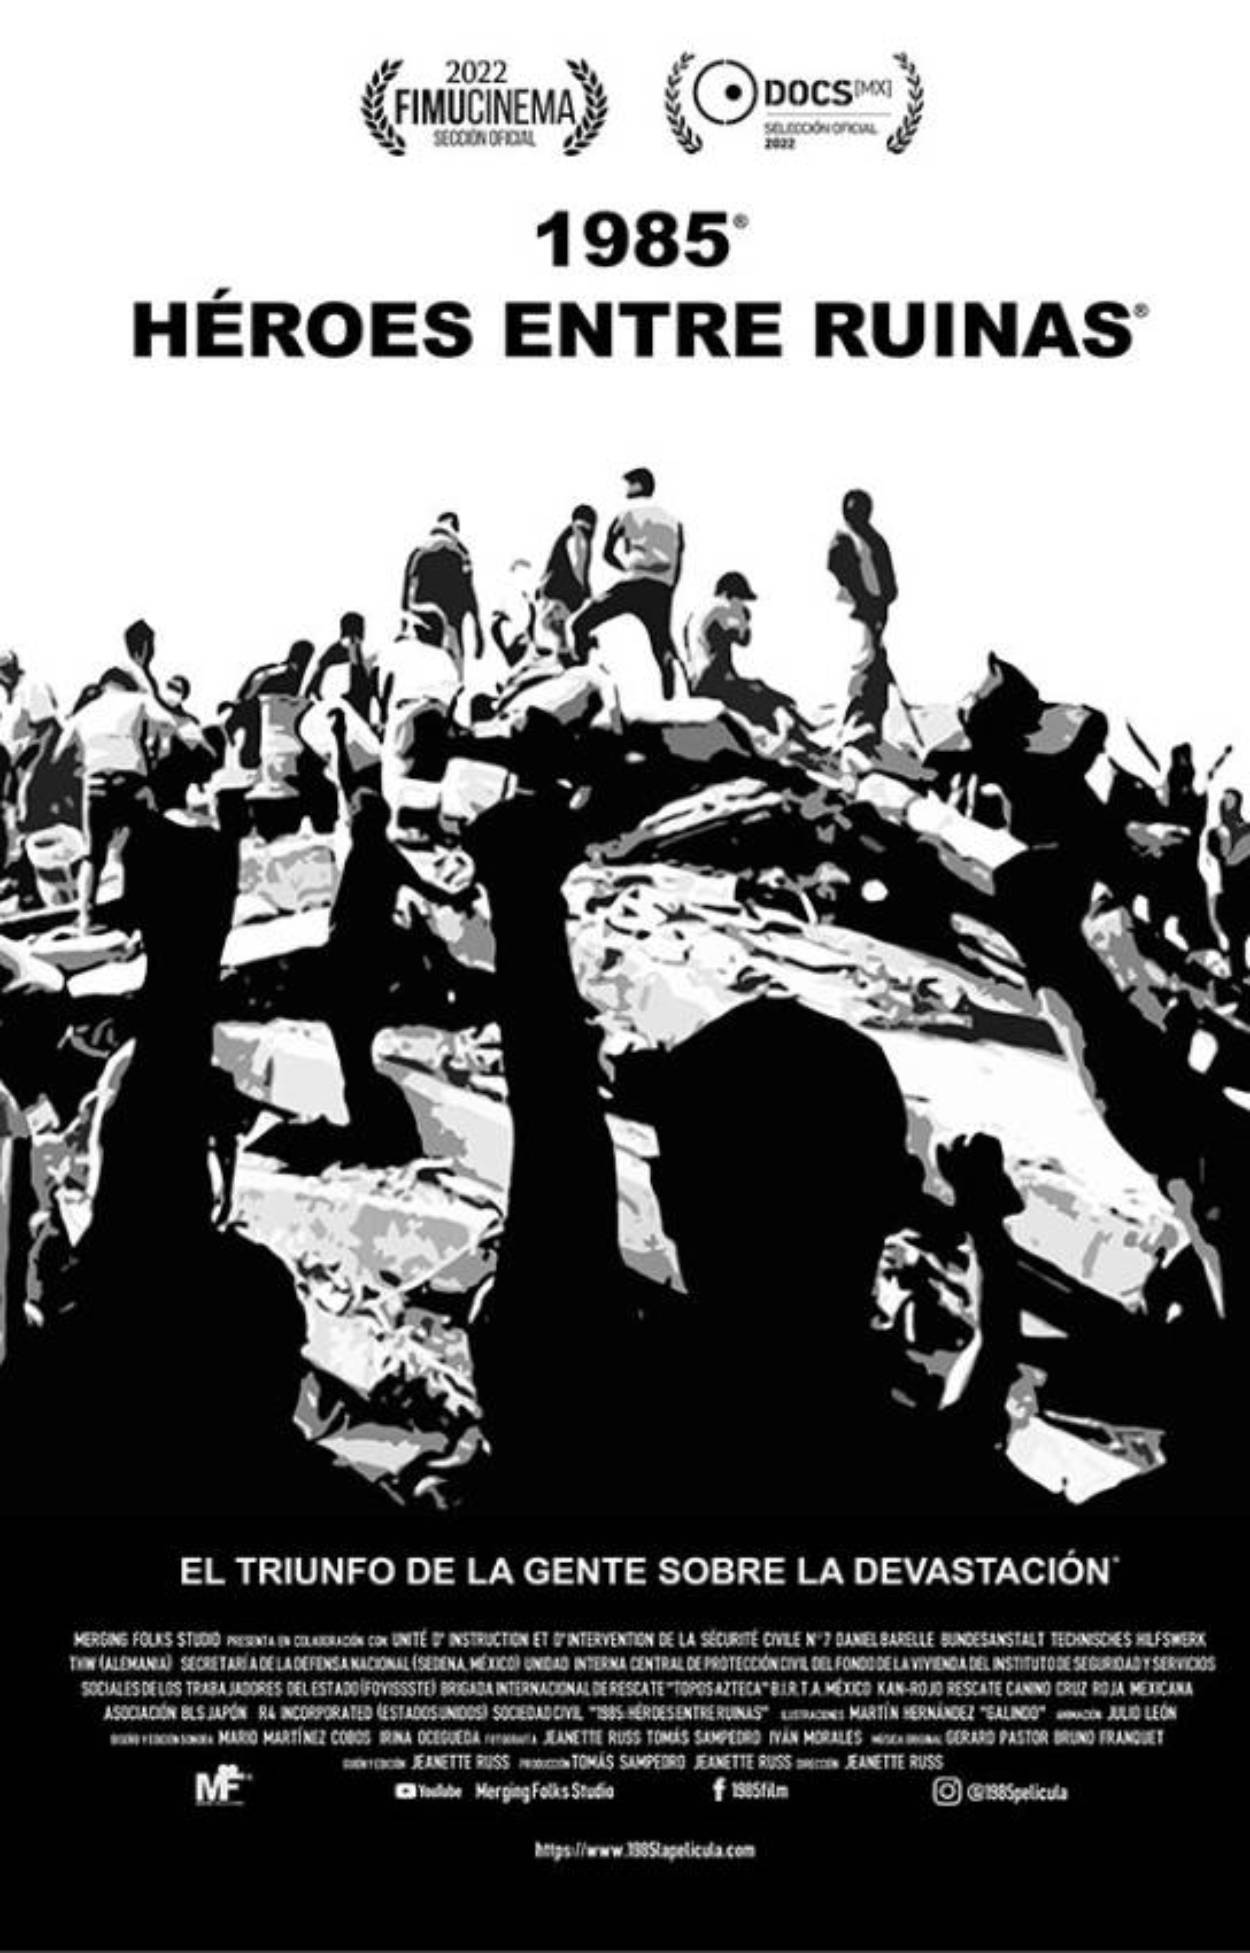 1985: Héroes entre ruinas formará parte de DOCS MX